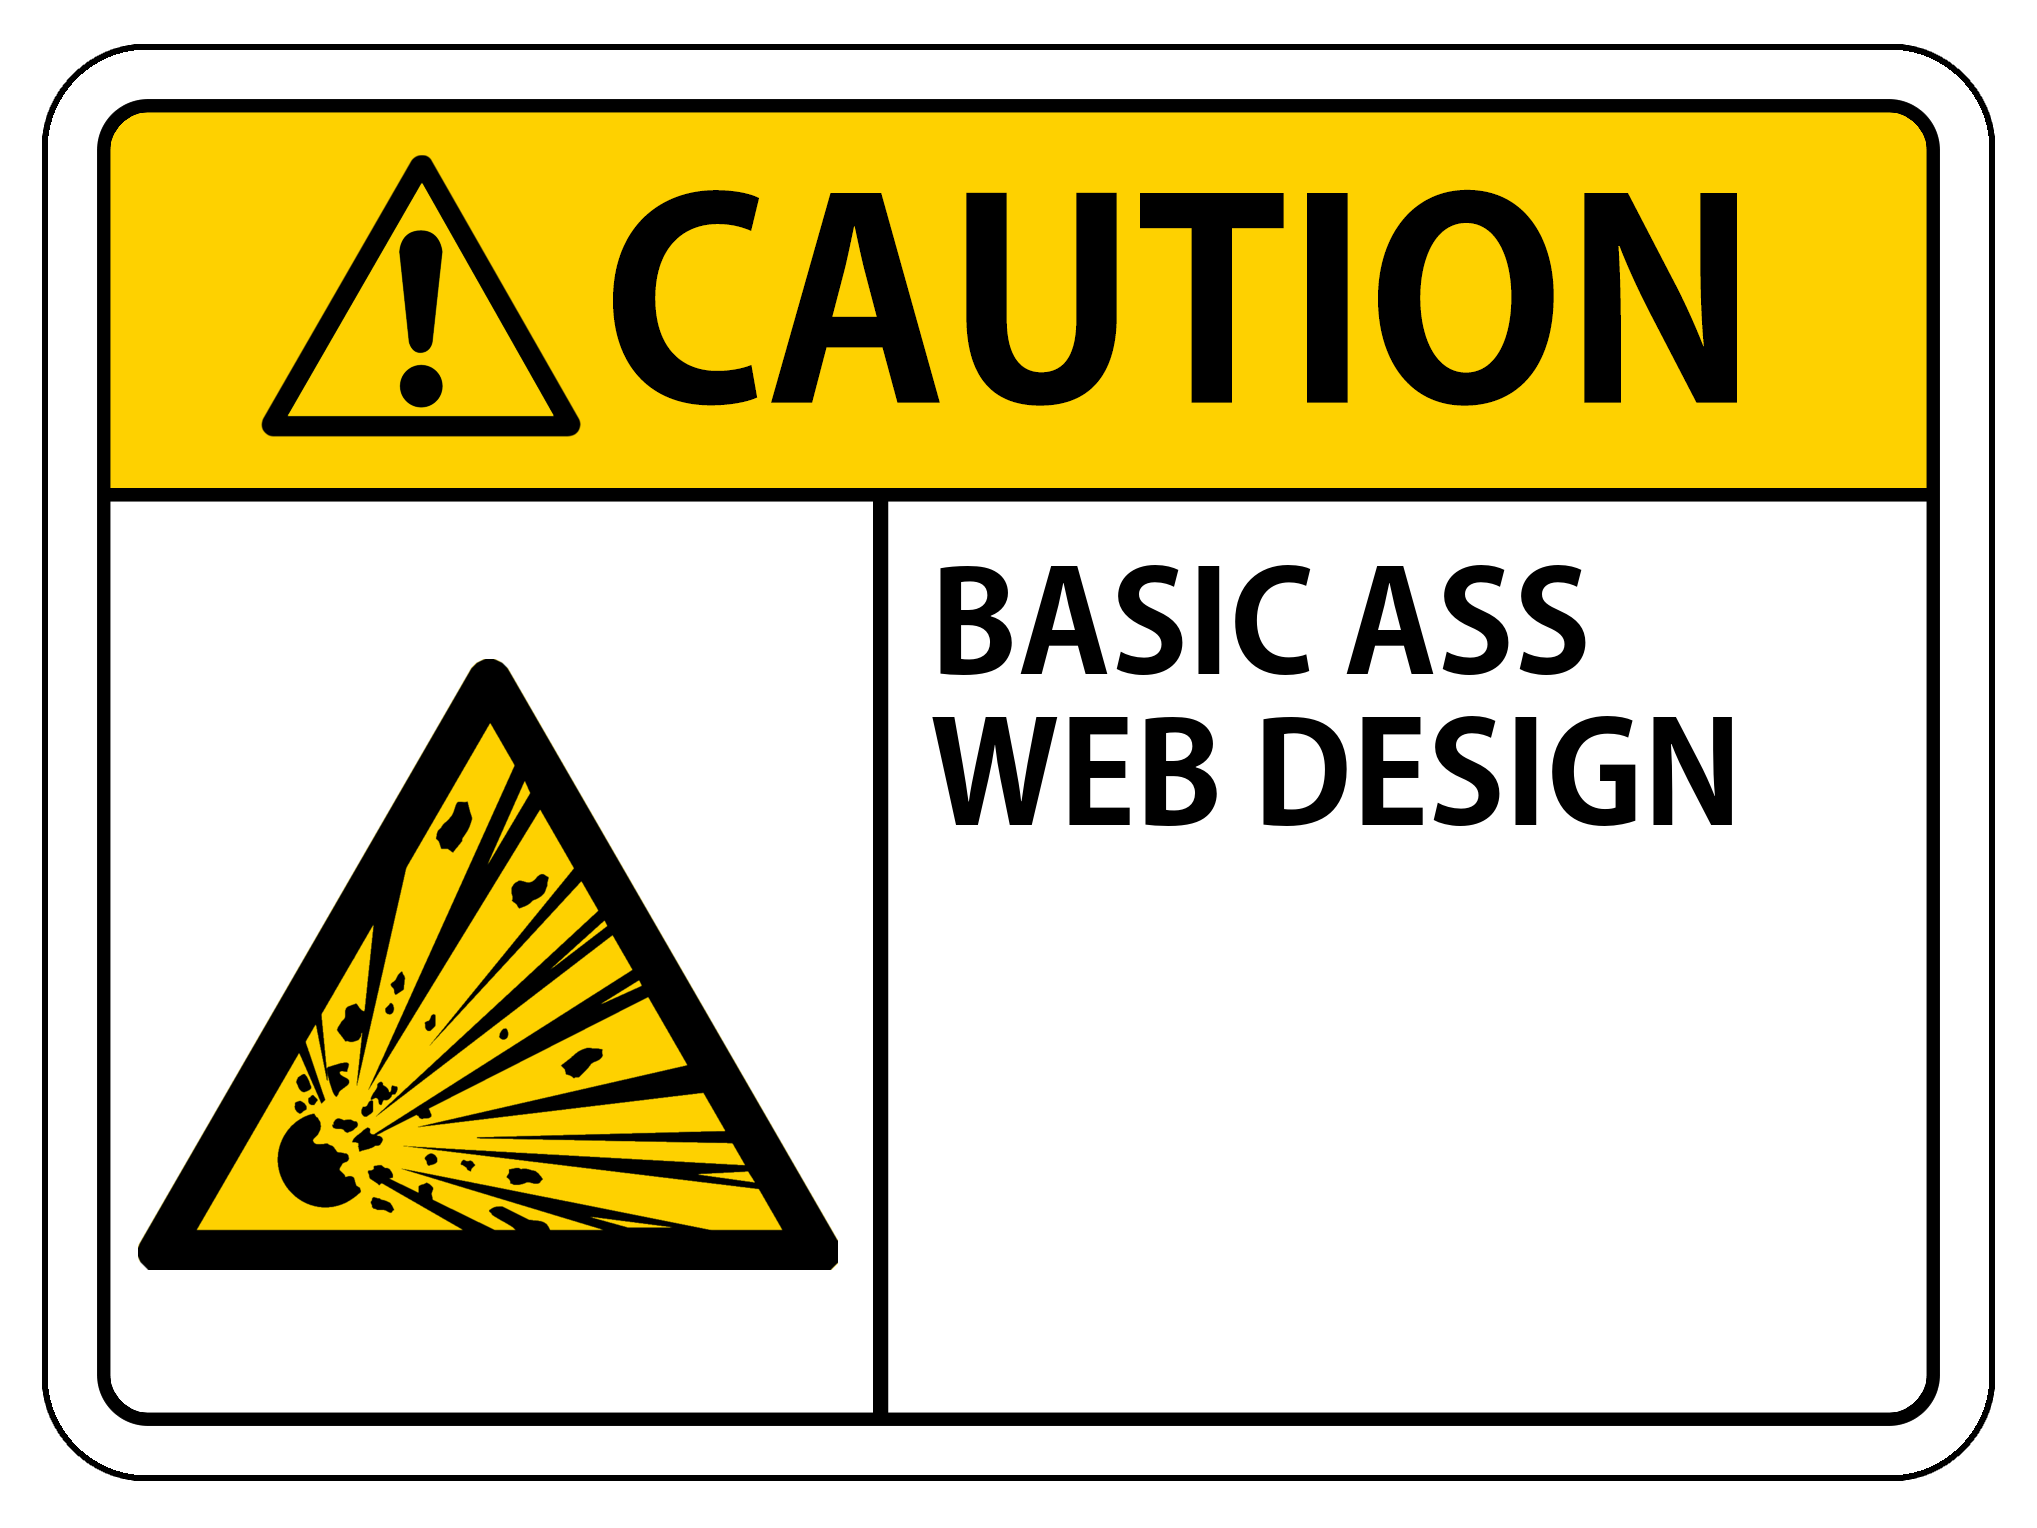 CAUTION: BASIC ASS WEB DESIGN